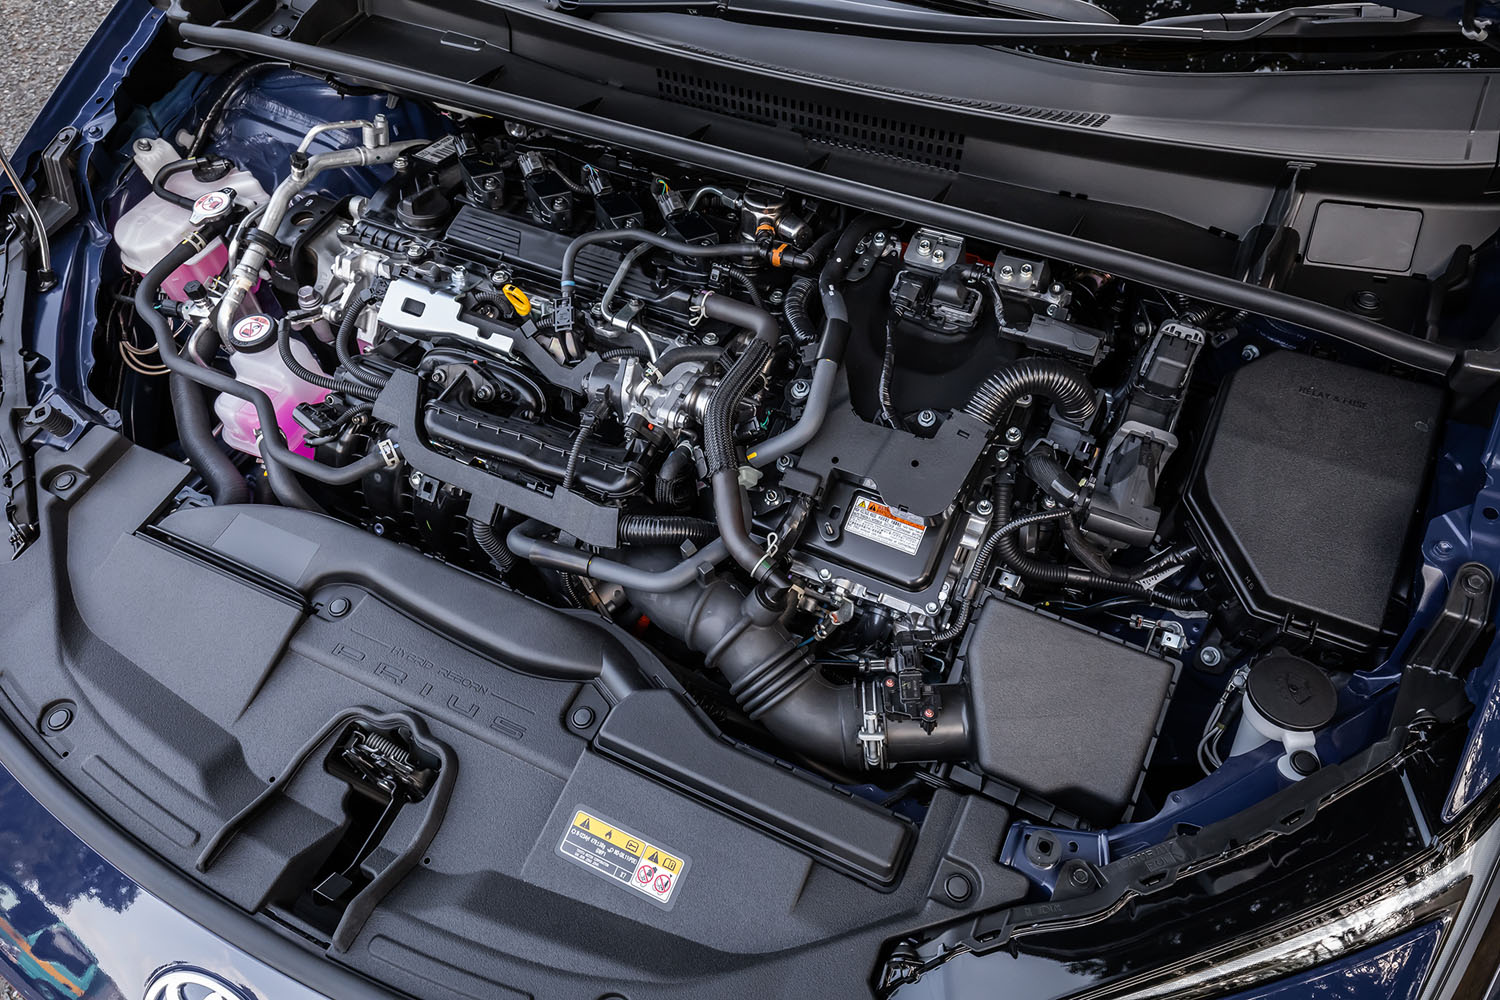 最高出力152PS、最大トルク188N・mを発生する2リッター直4エンジンに、前後1基ずつのモーターを組み合わせたハイブリッドパワーユニットを搭載。「E-Four」と呼ばれる4WD車のシステム最高出力は199PSと発表されている。